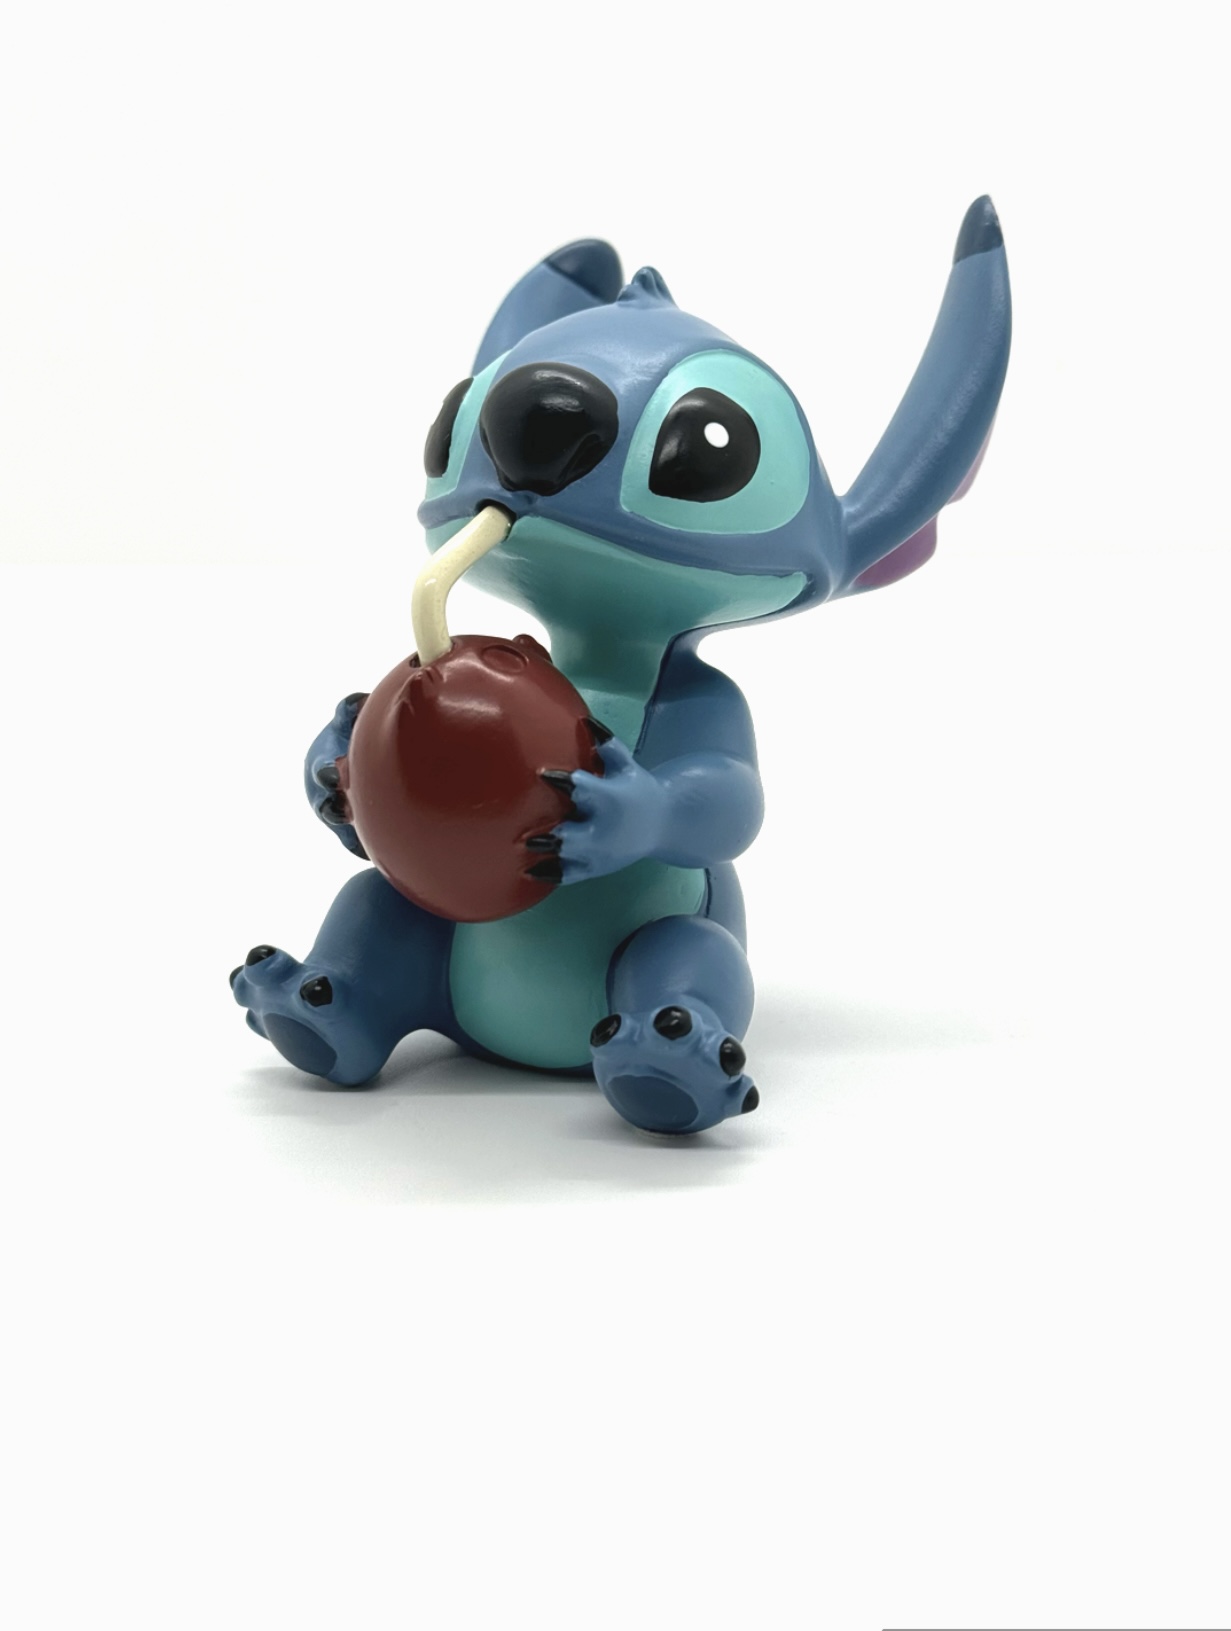 Deko Figur Stitch mit Kokosnuss 8 cm “Lilo & Stitch” Sammlerfigur Disney 